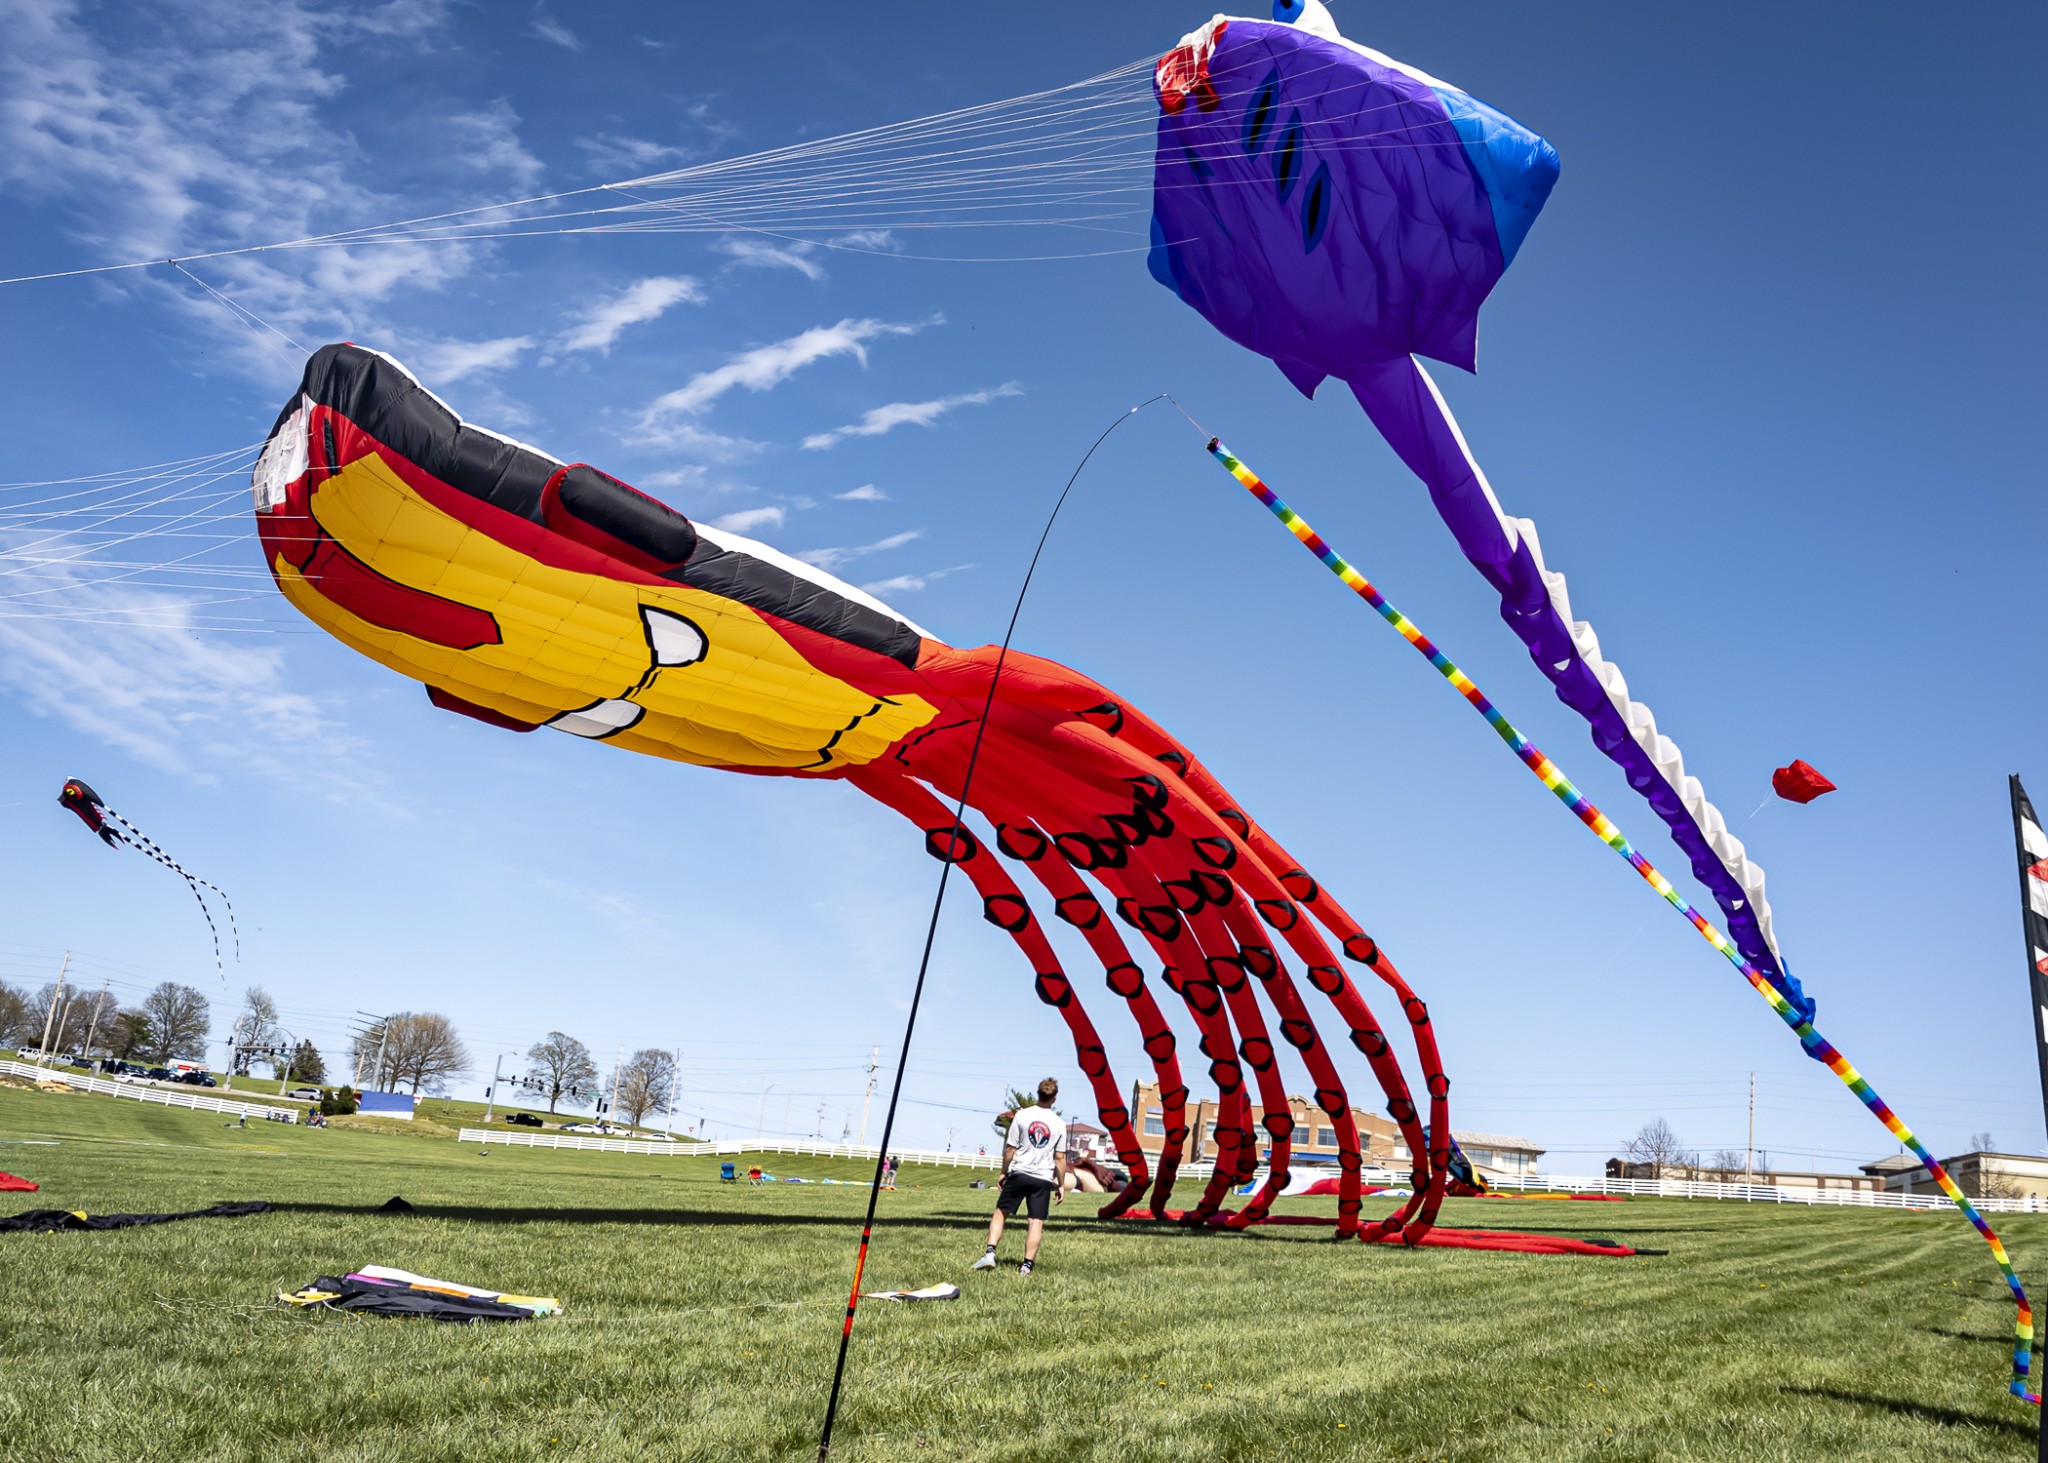 Photos Flights of Fancy Mega Kite Festival